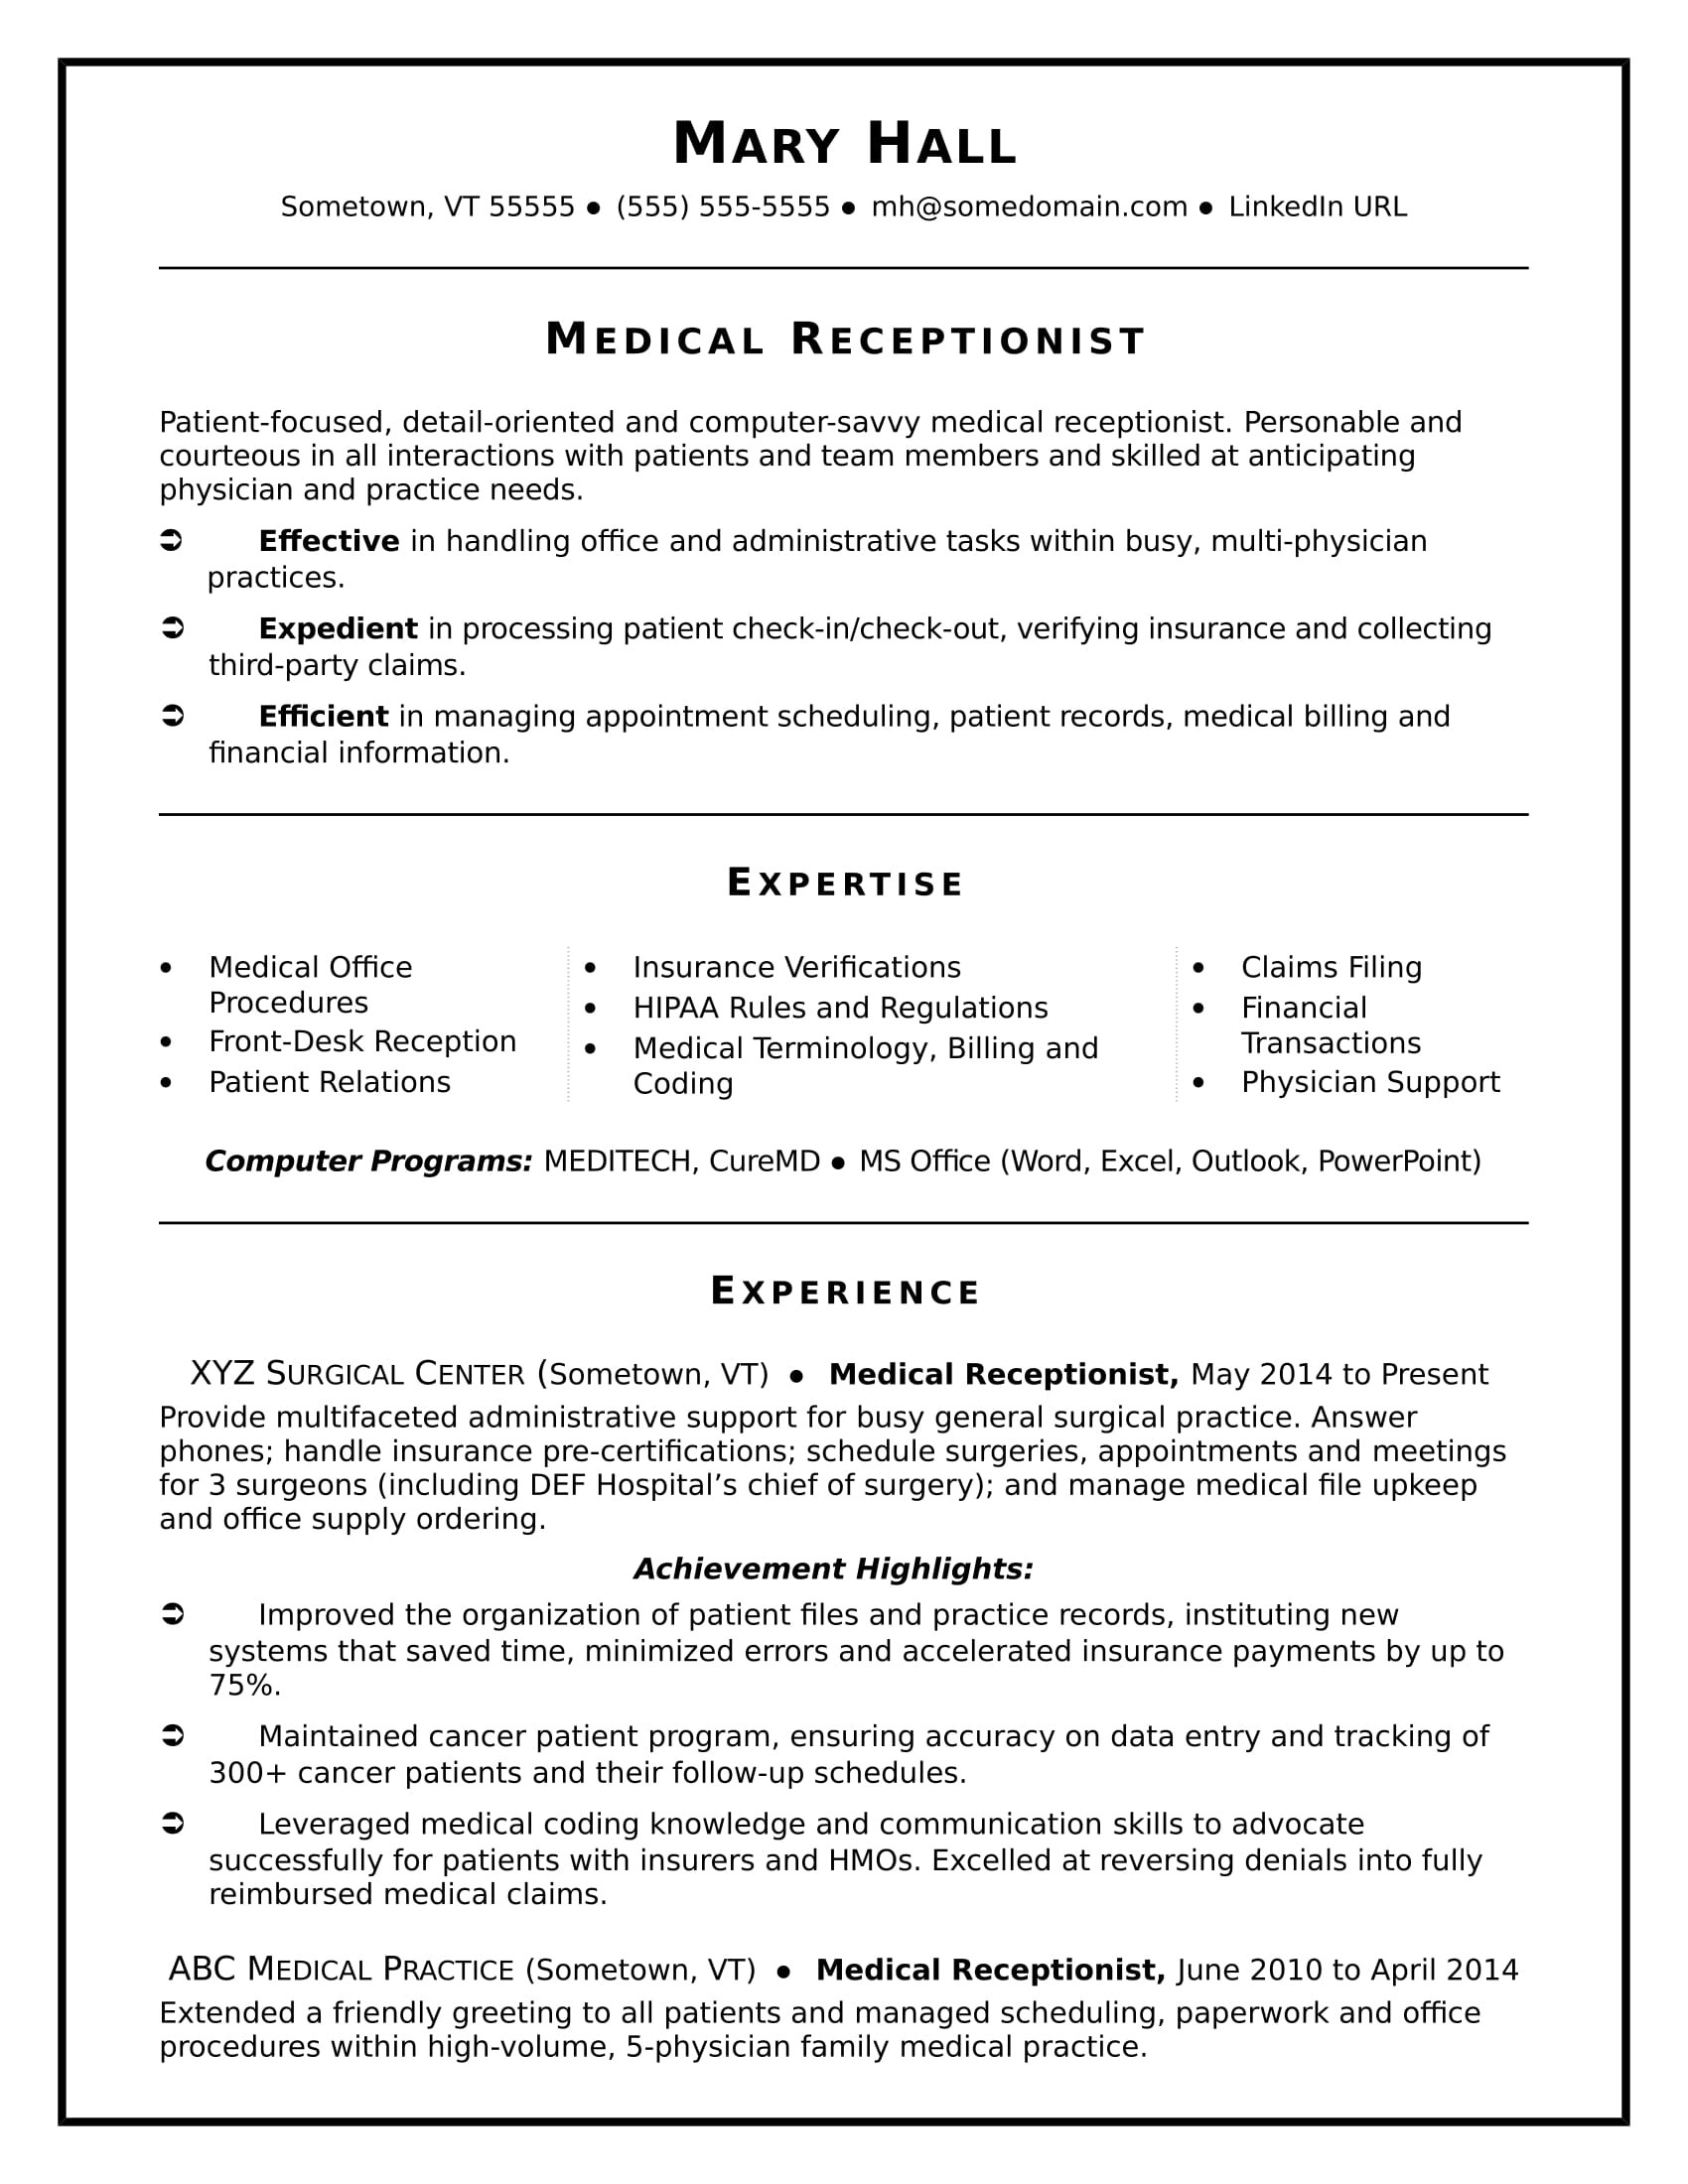 Receptionist Job Description Sample On Resume Medical Receptionist Resume Sample Monster.com